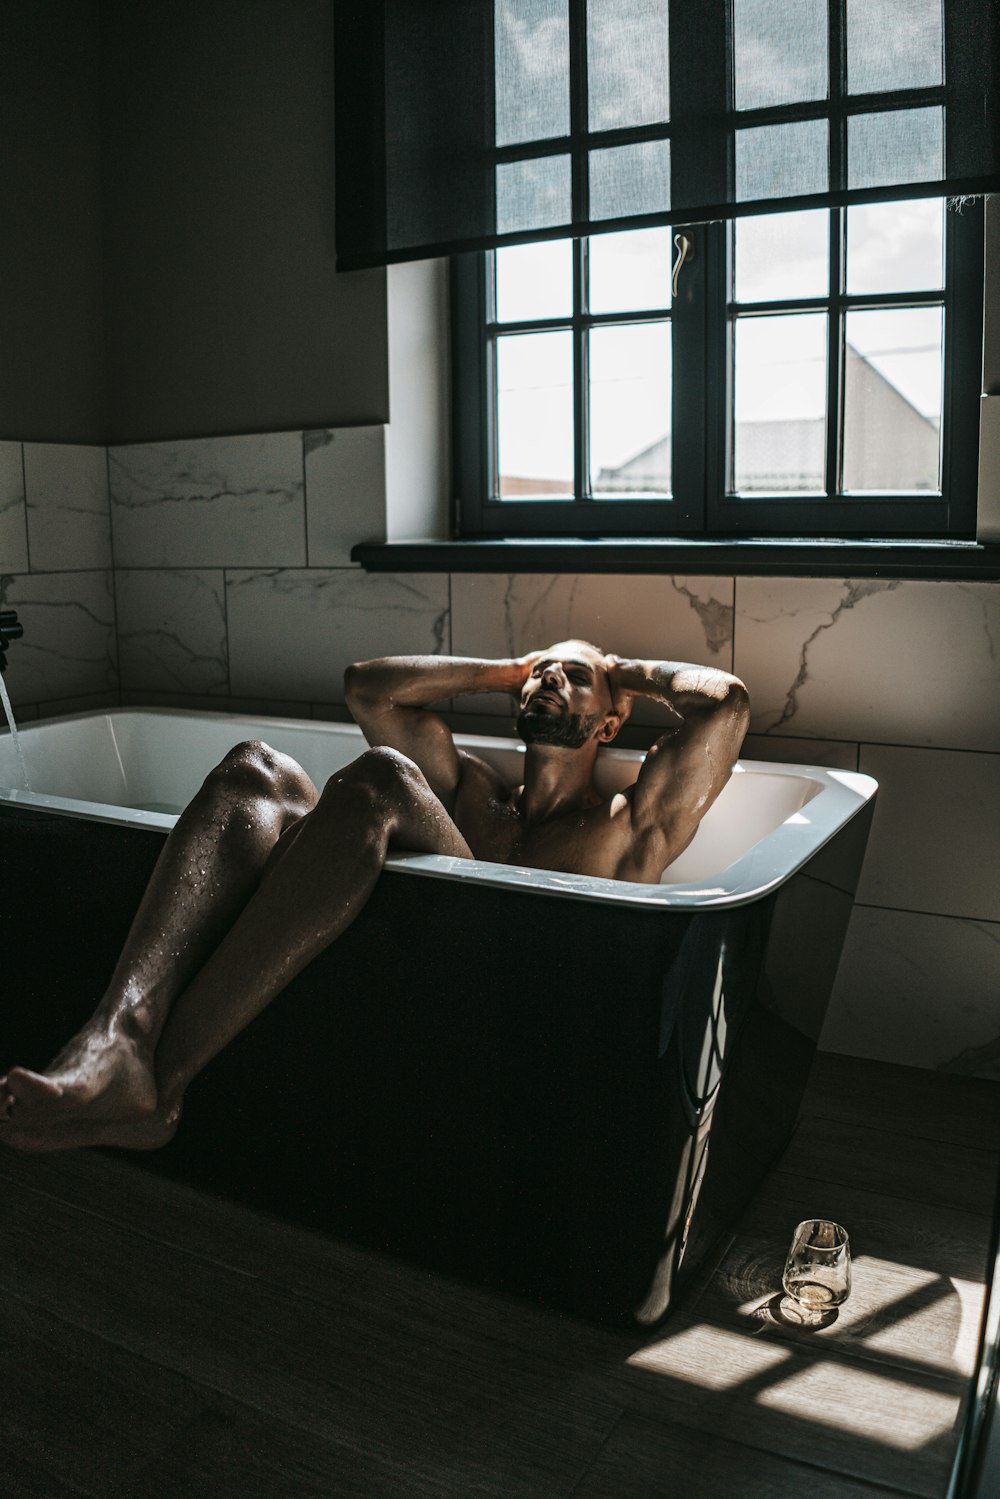 um homem nu está sentado em uma banheira